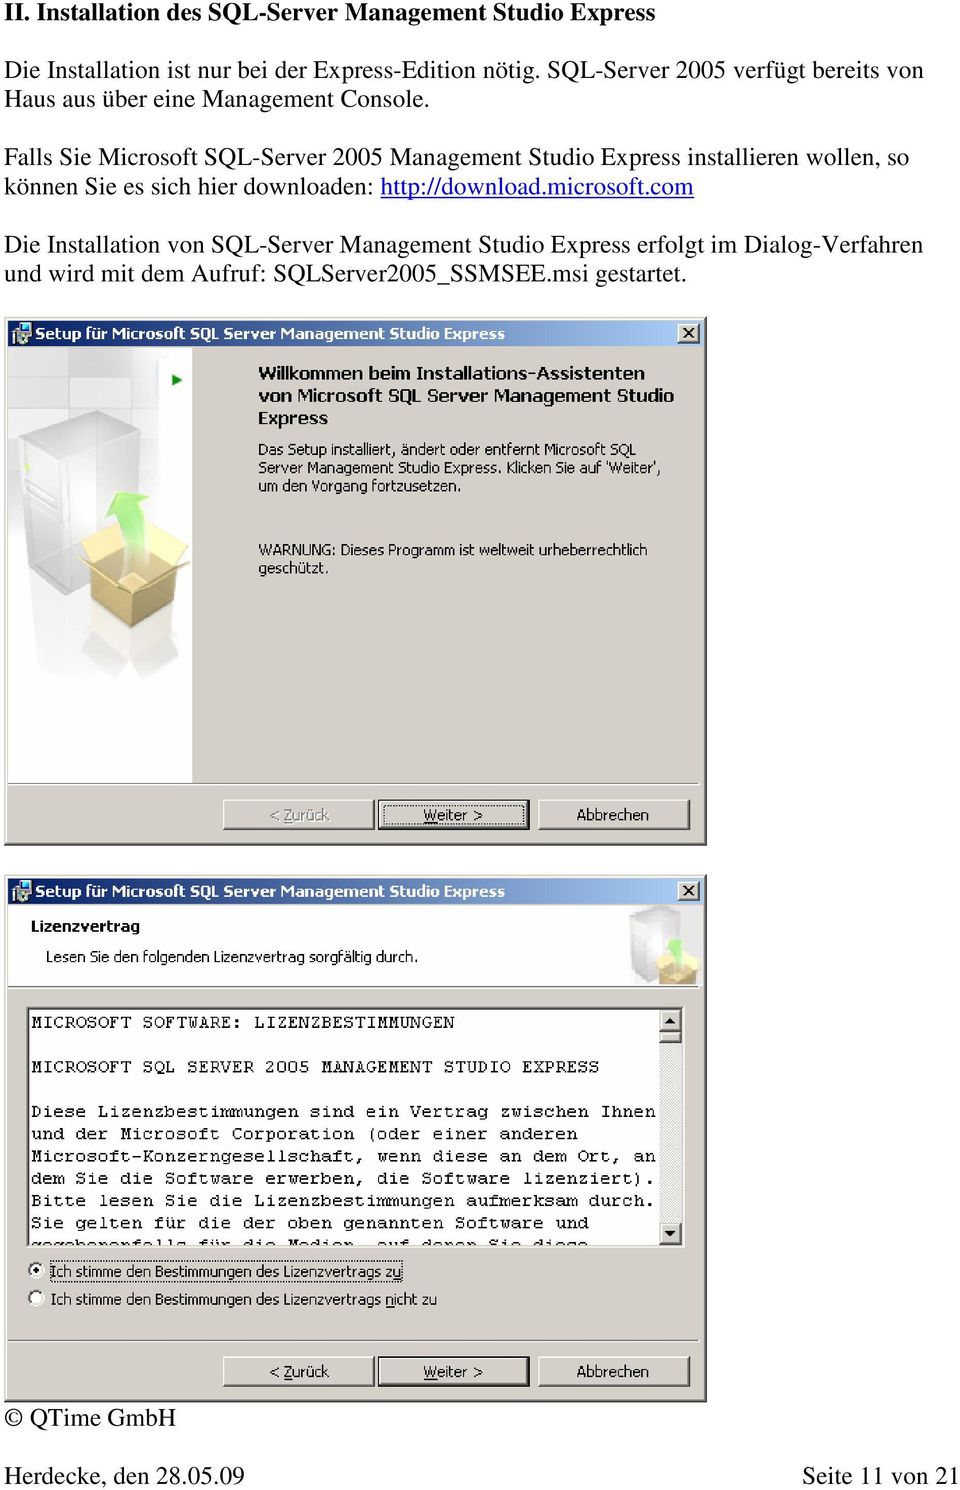 Falls Sie Microsoft SQL-Server 2005 Management Studio Express installieren wollen, so können Sie es sich hier downloaden: